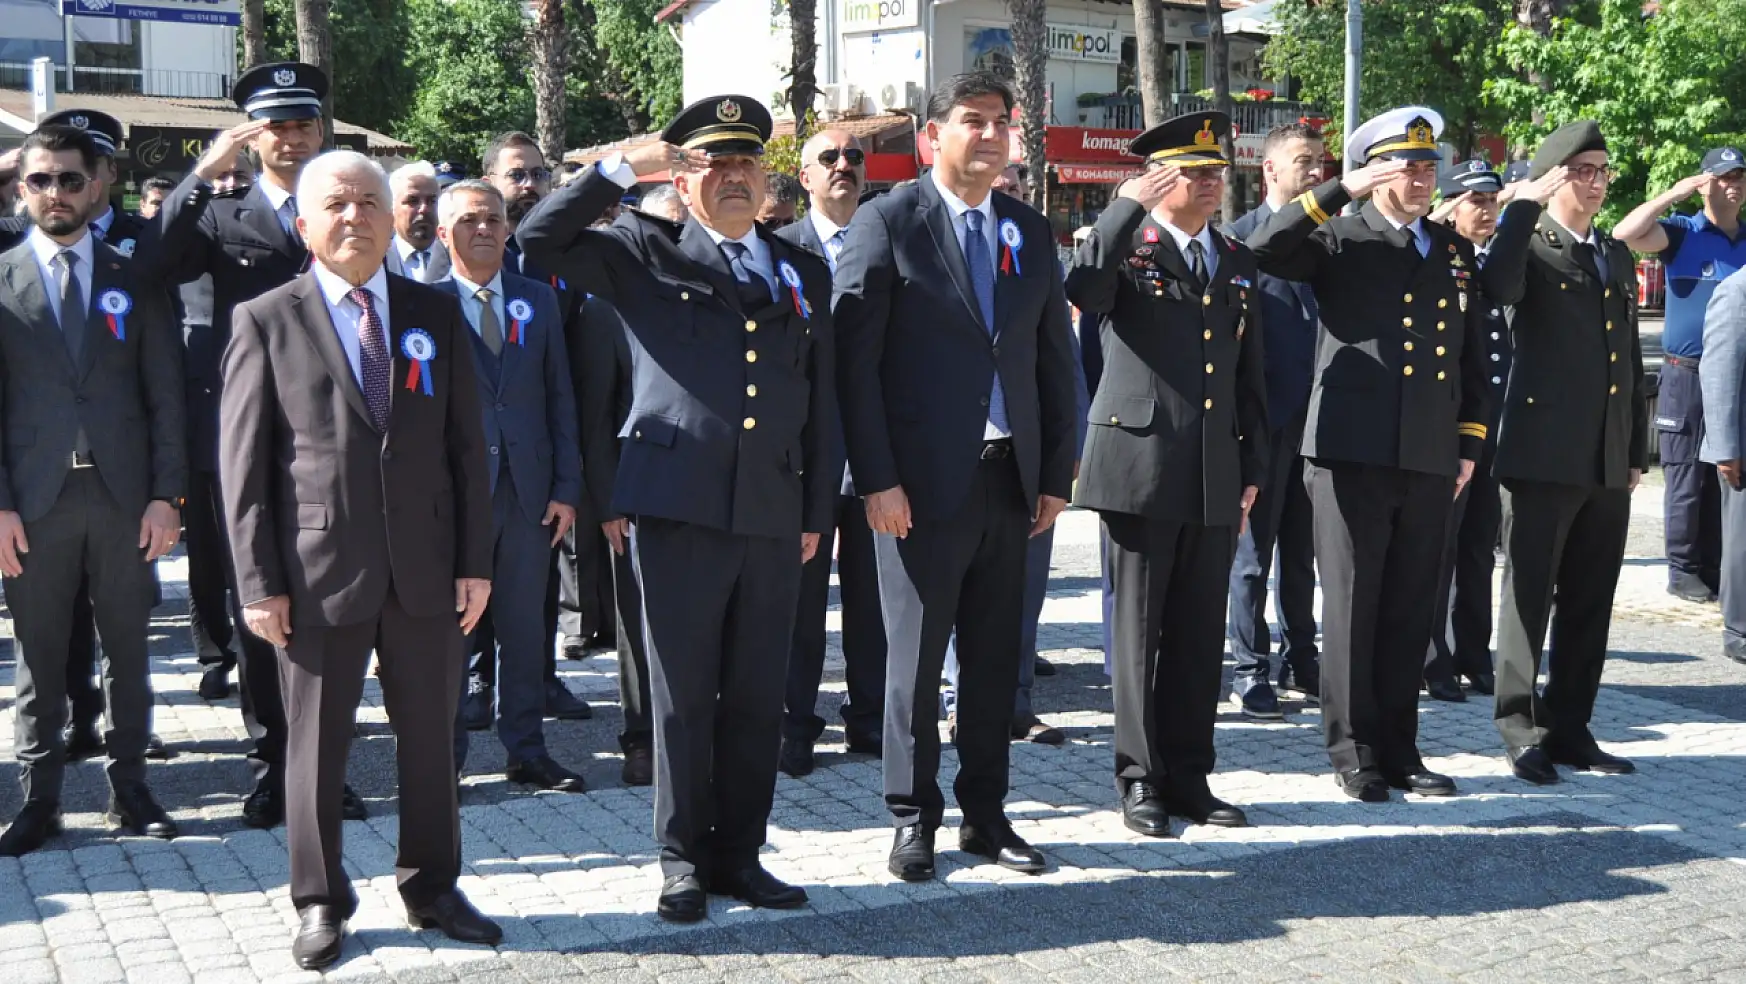 Fethiye'de Türk Polis Teşkilatının 179.Kuruluş Yıldönümü törenle kutlandı